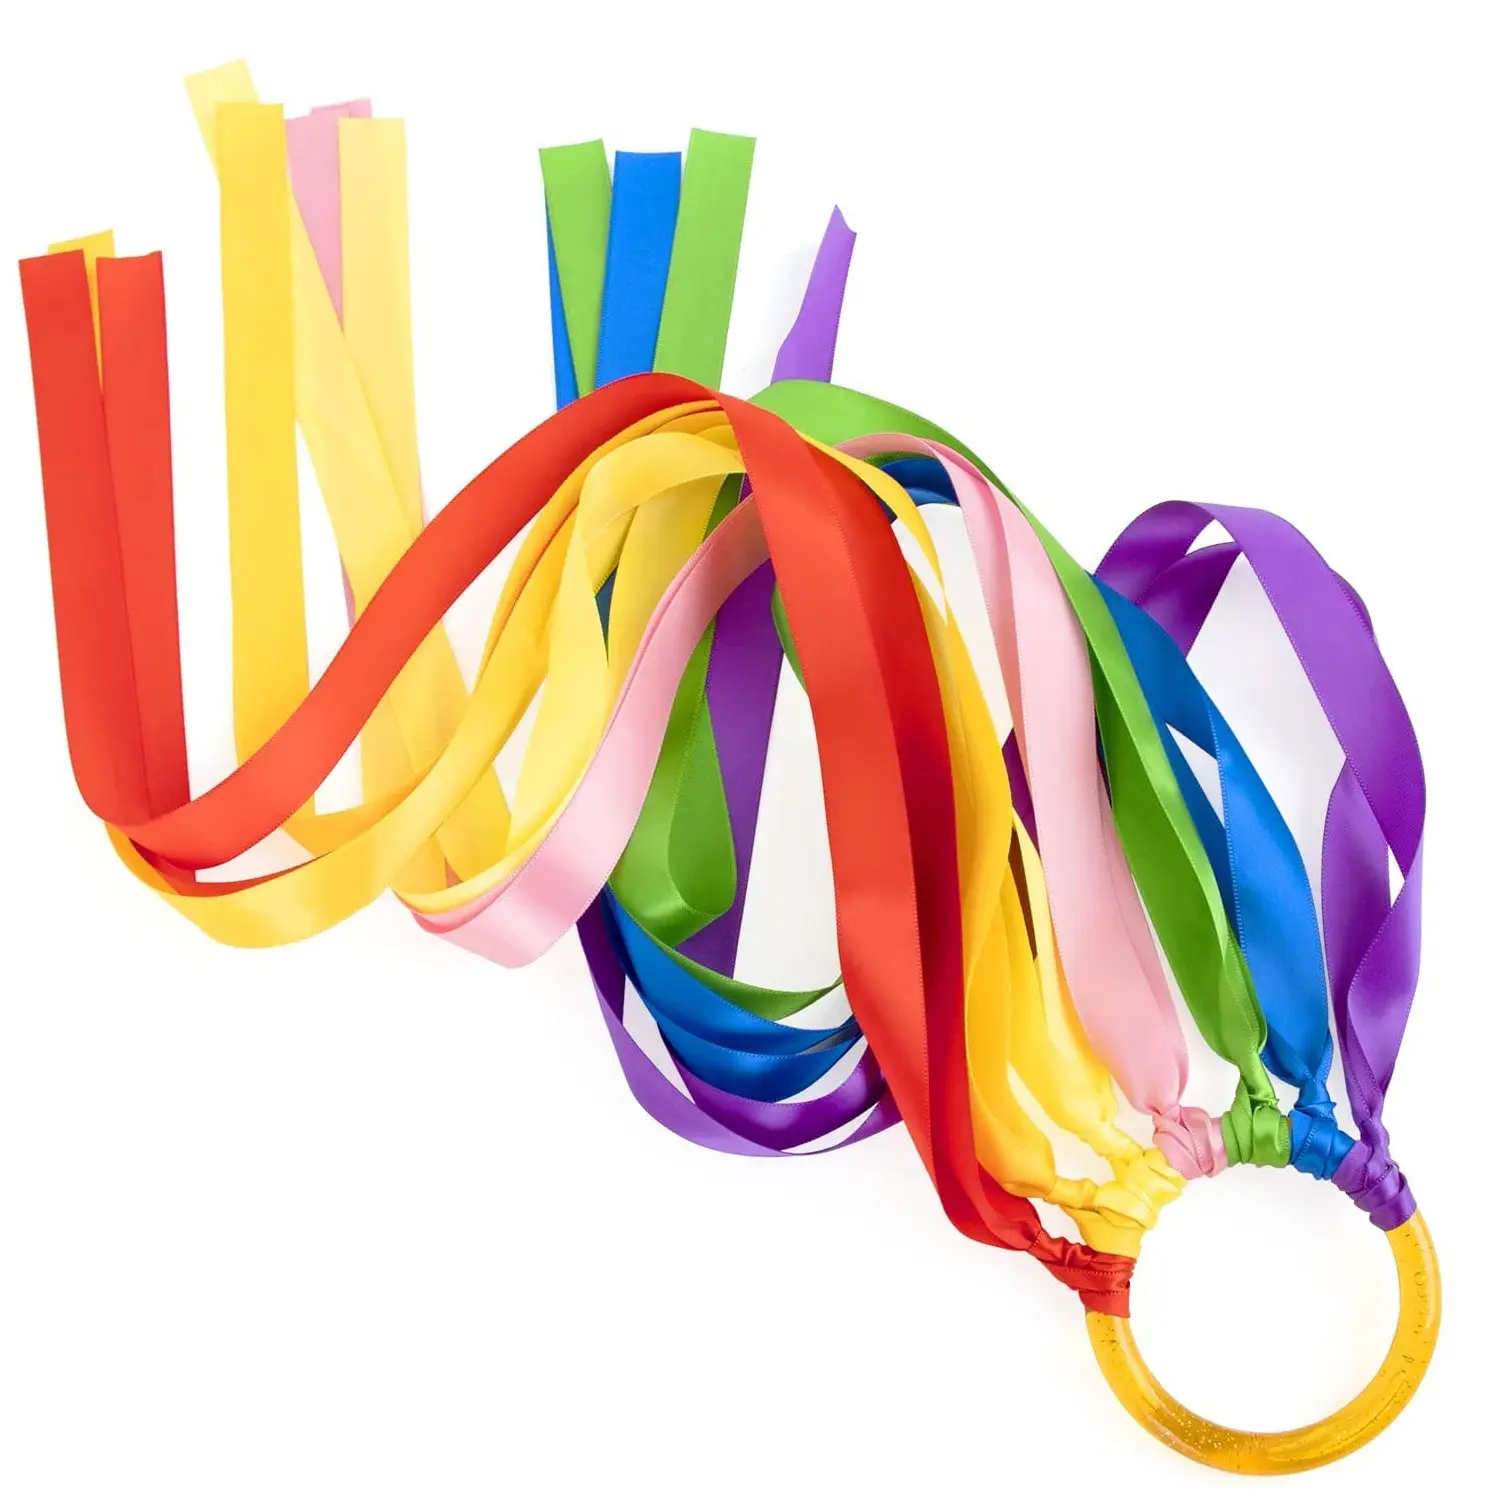 Anello da ballo con nastro per ginnastica ritmica con anello in plastica e nastri color arcobaleno in raso per danza e ginnastica